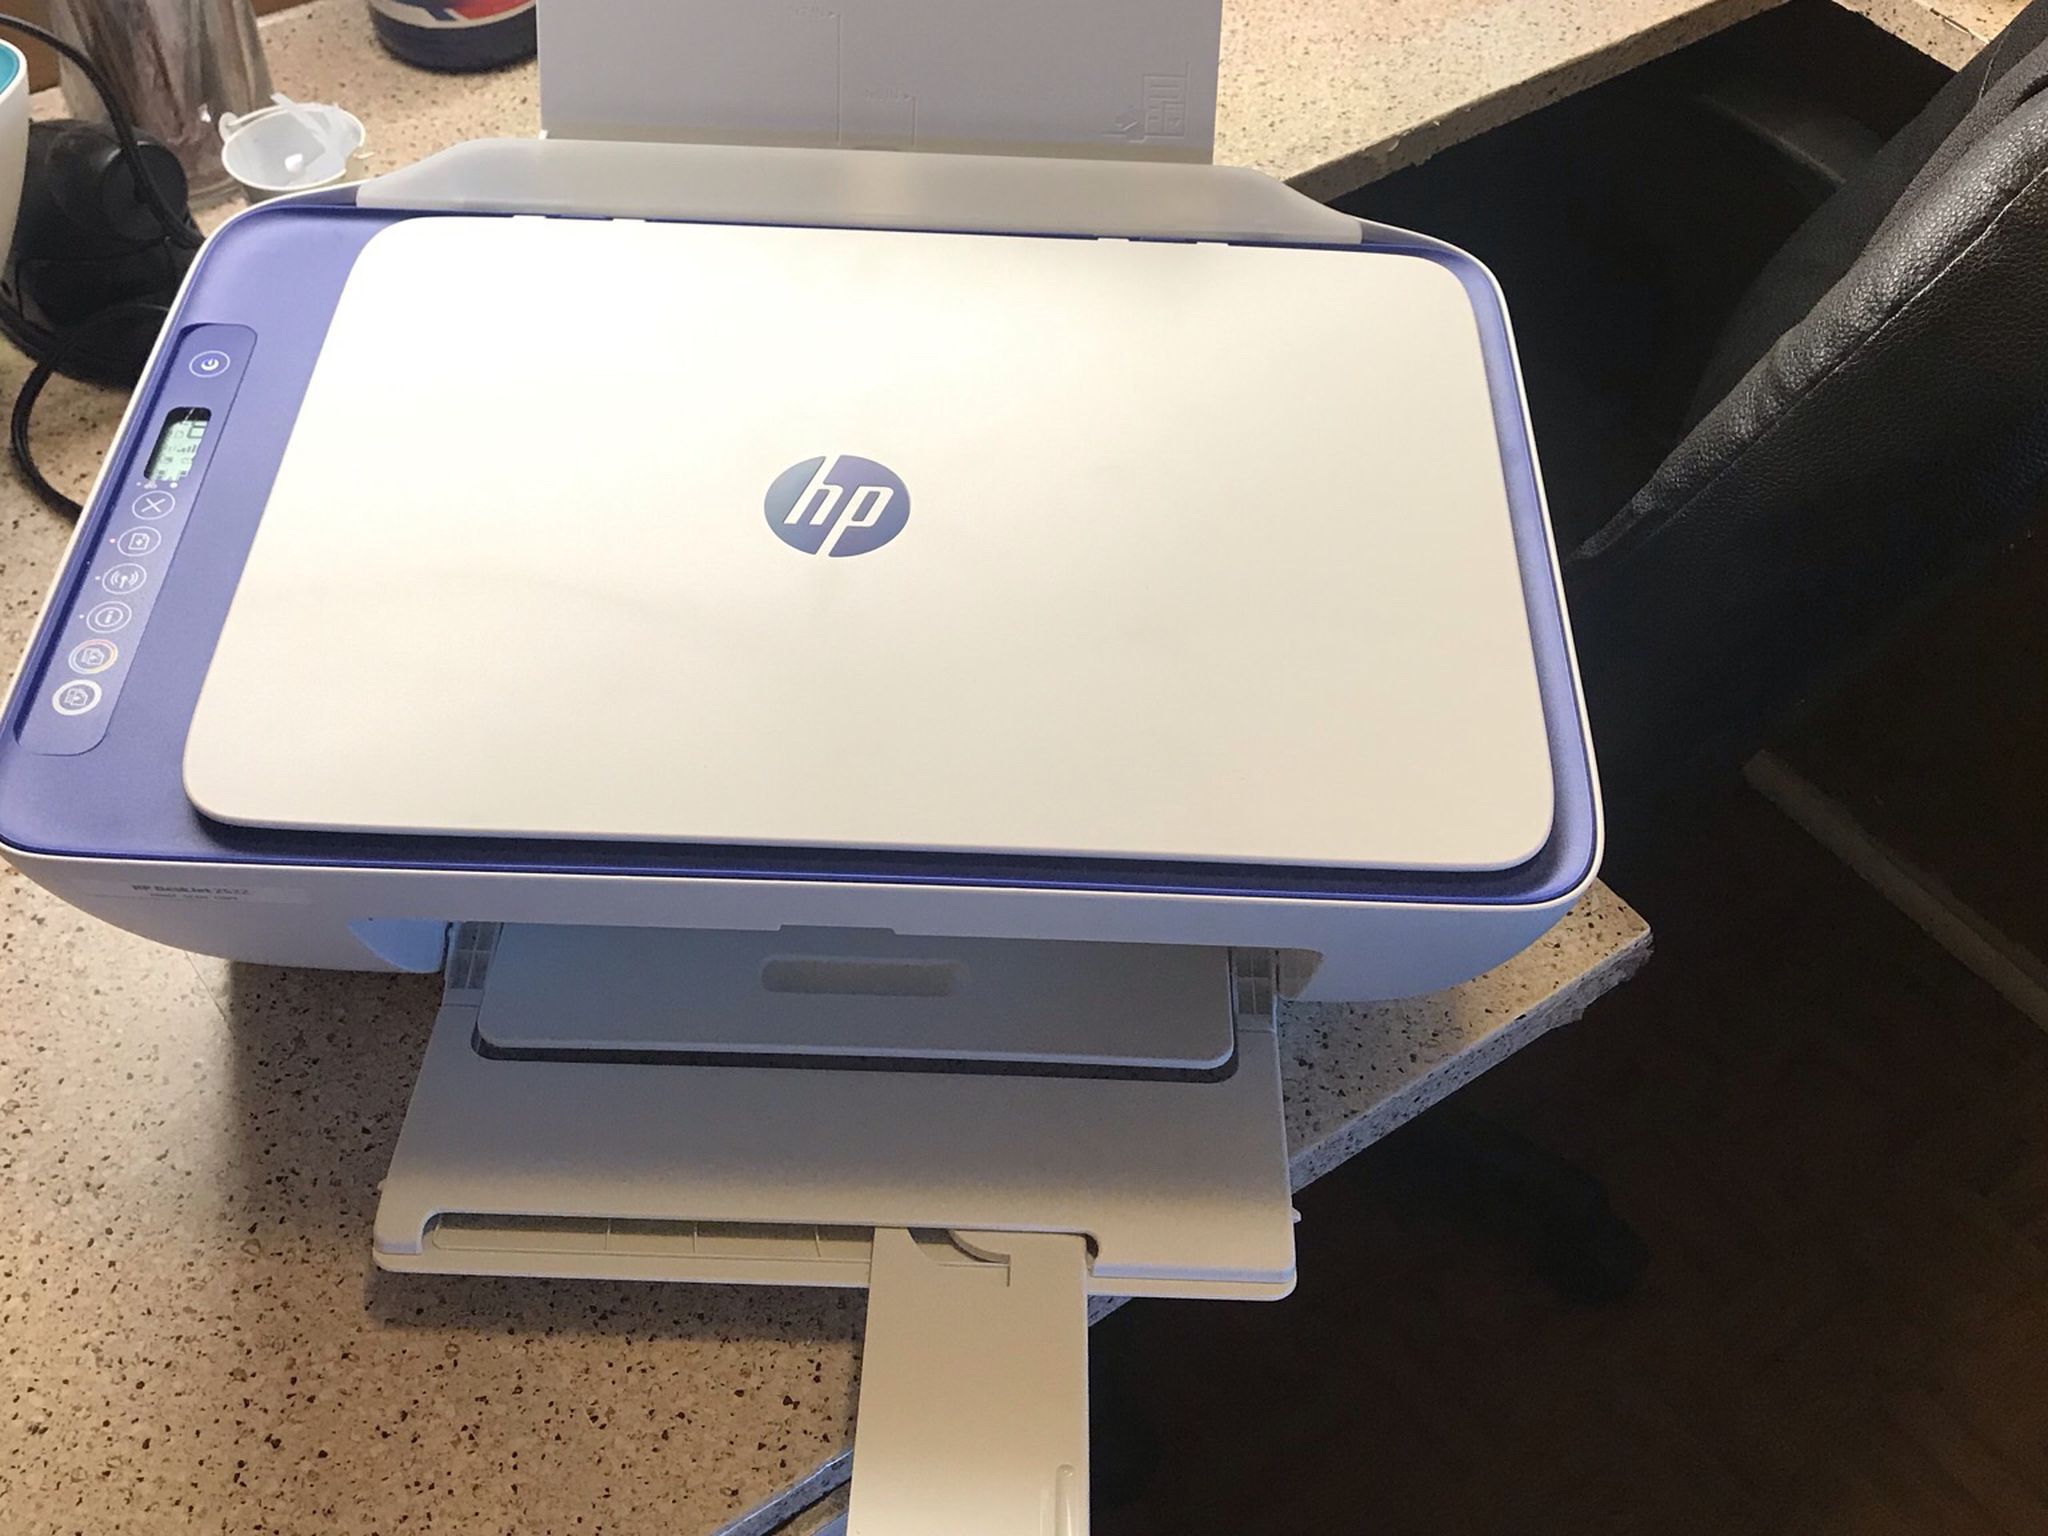 HP Desk Jet 2622 Ink Printer